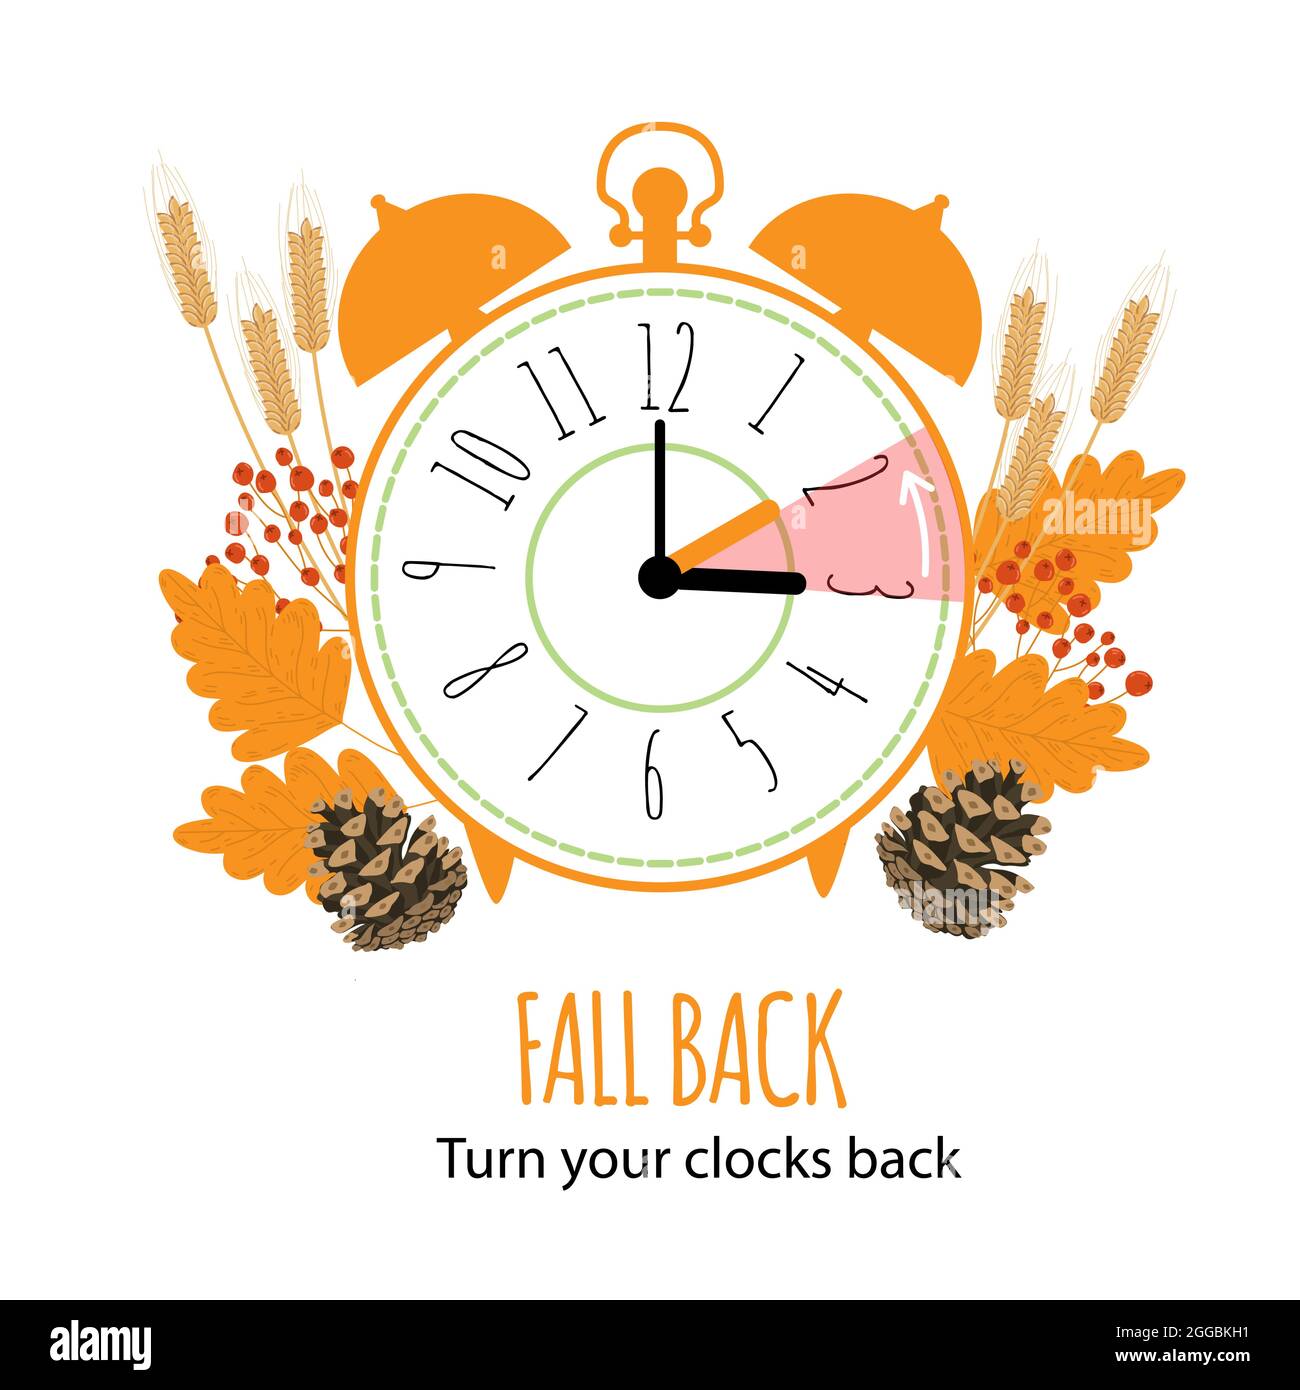 Fallback-Konzept mit grafischem Alarm und Zeitplan zur Einstellung der Uhr um eine Stunde. Das Ende der Sommerzeit. Vektor-Illustration mit Herbst lea Stock Vektor